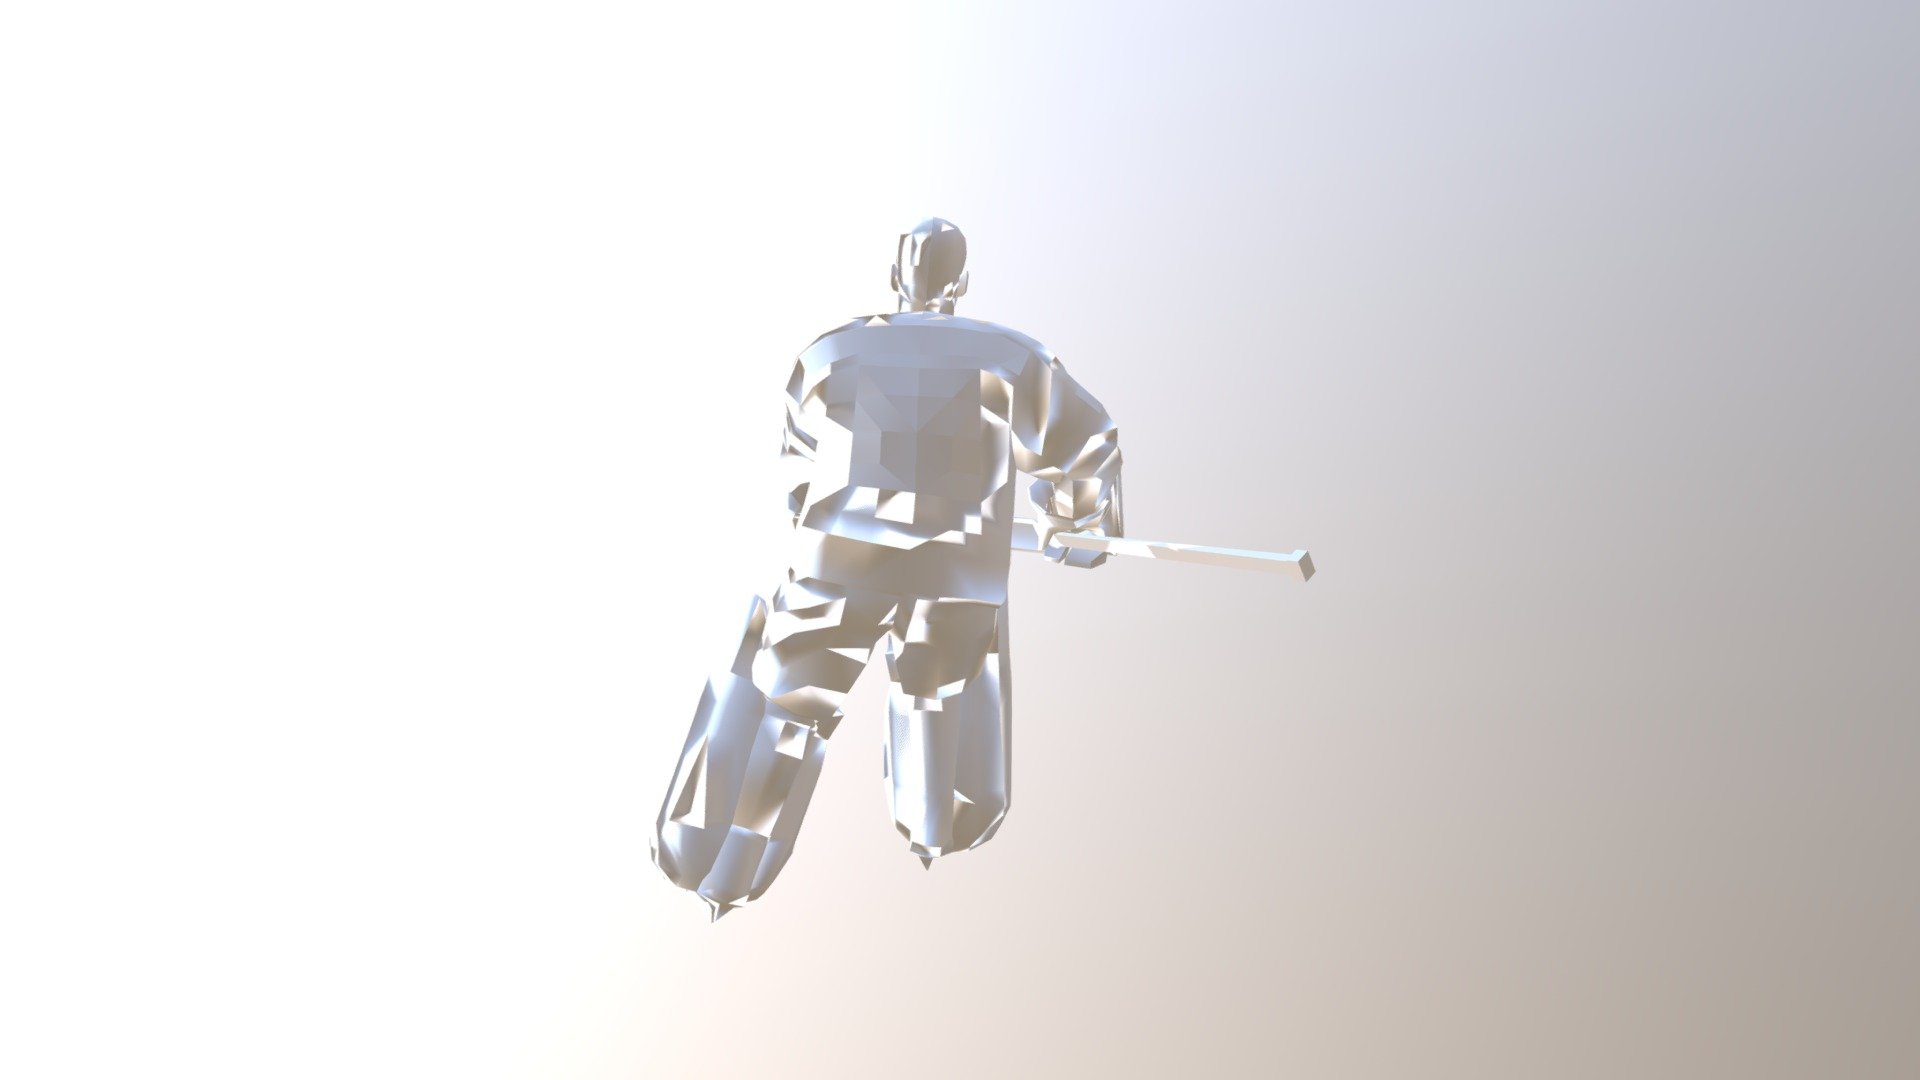 goalkeeper - 3D model by Roman.Galstyan 3d model